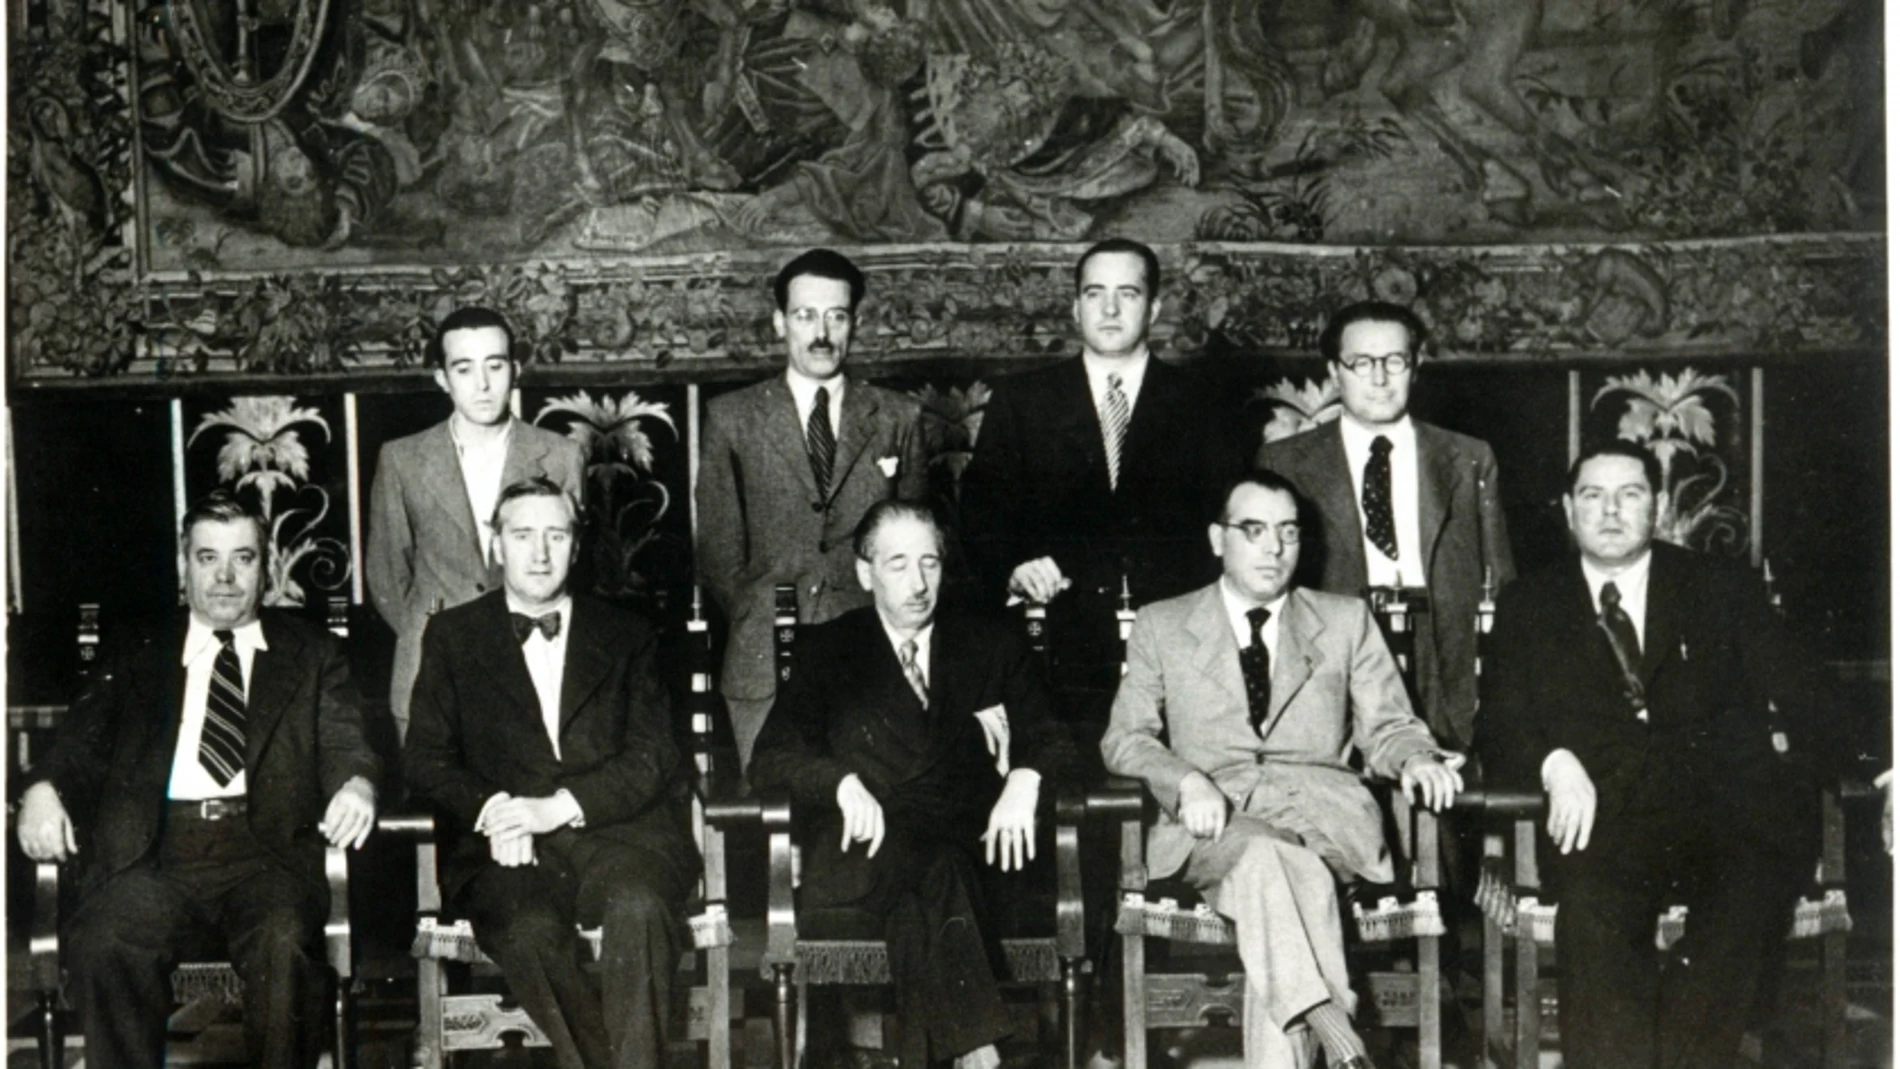 En el centro, el presidente de la Generalitat Lluís Companys en la constitución de su gobierno en 1937. A su derecha, con pajarita, Carles Pi i Sunyer, que en esa época fue conseller de Cultura